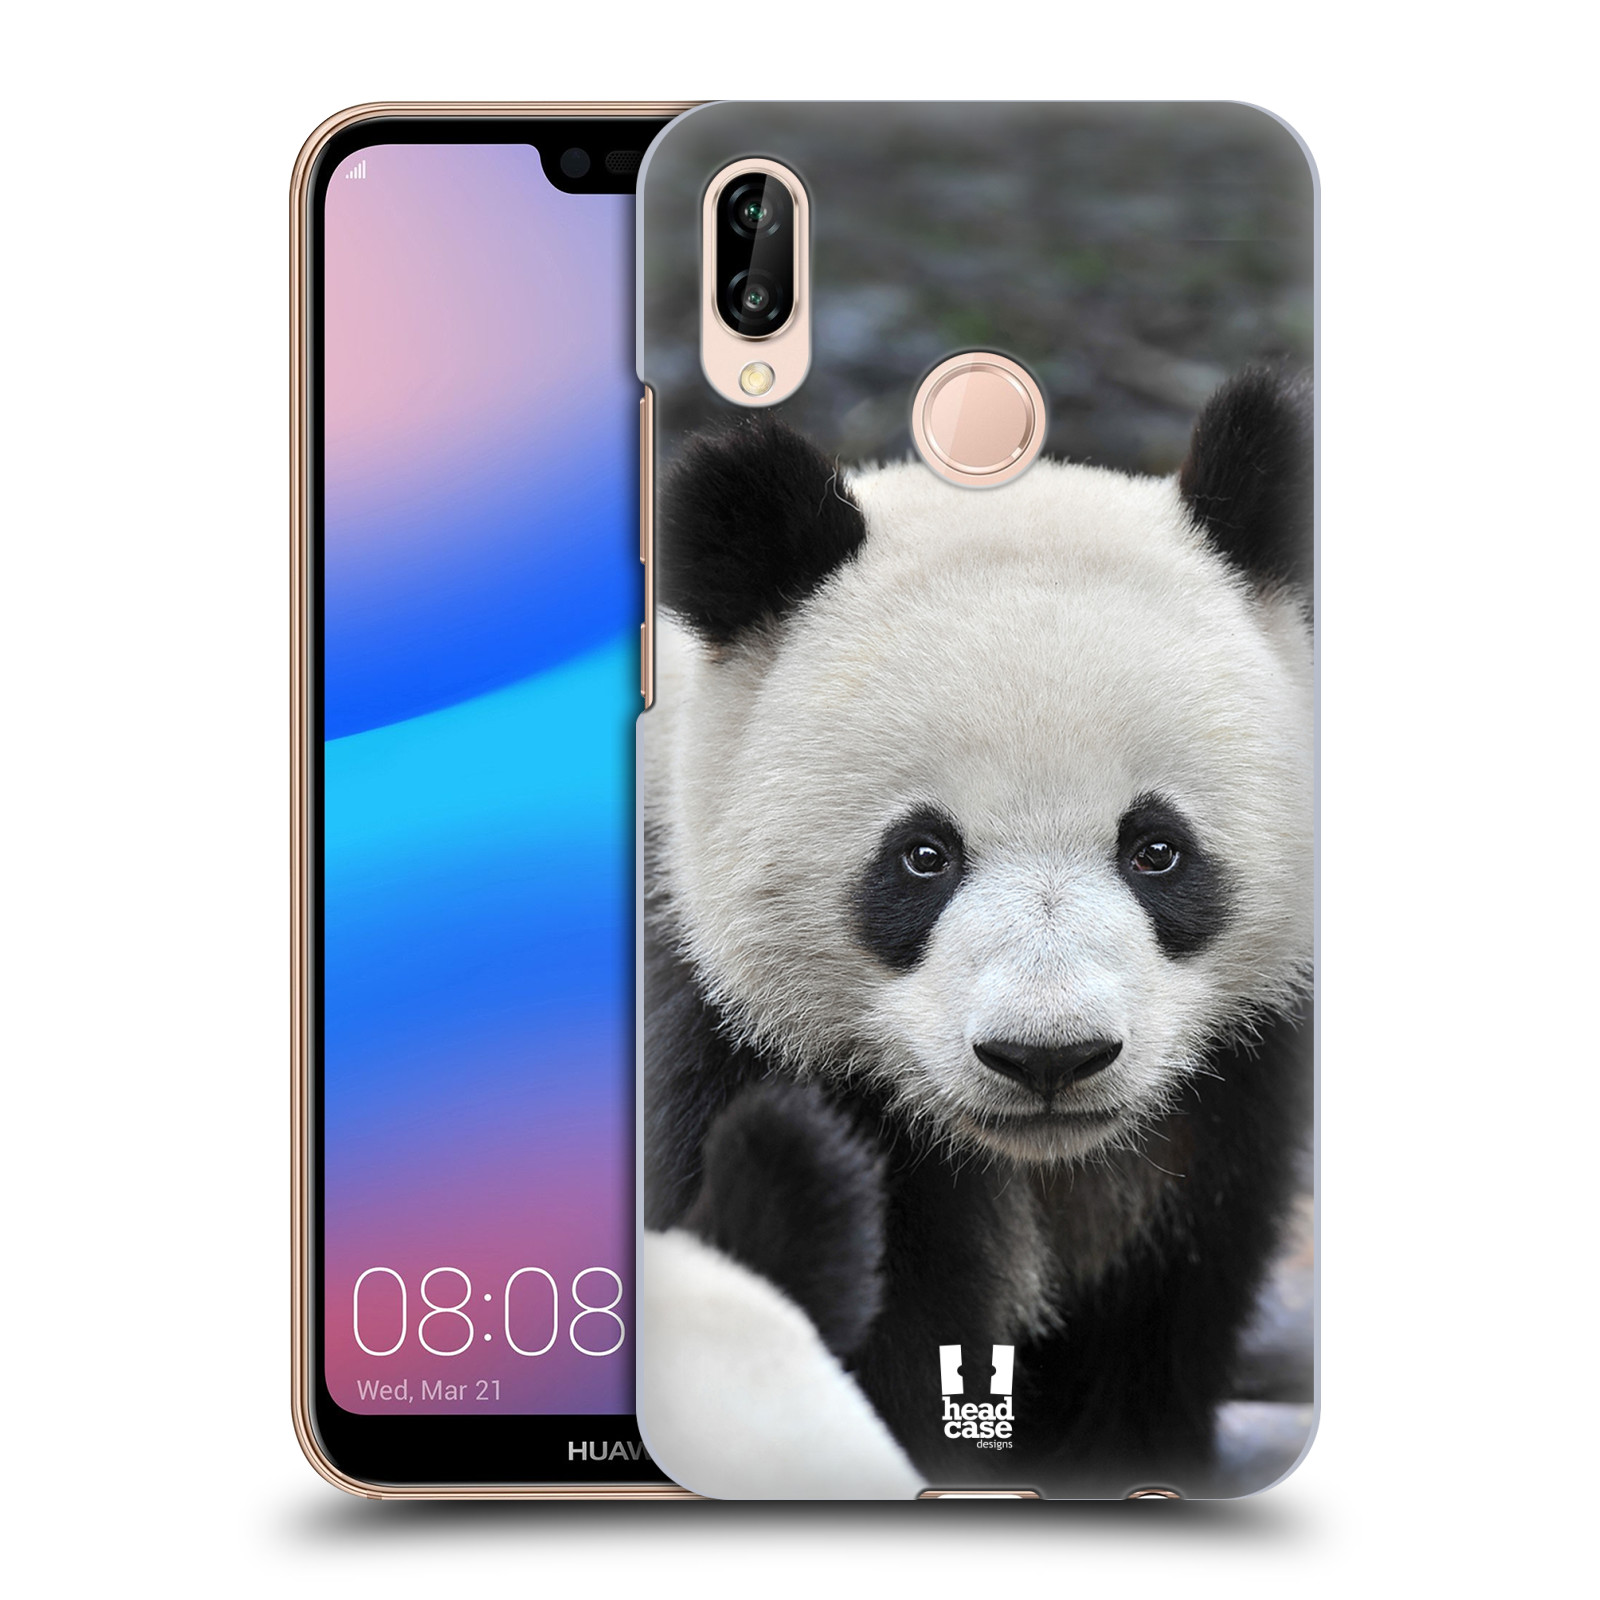 Zadní obal pro mobil Huawei P20 LITE - HEAD CASE - Svět zvířat medvěd panda